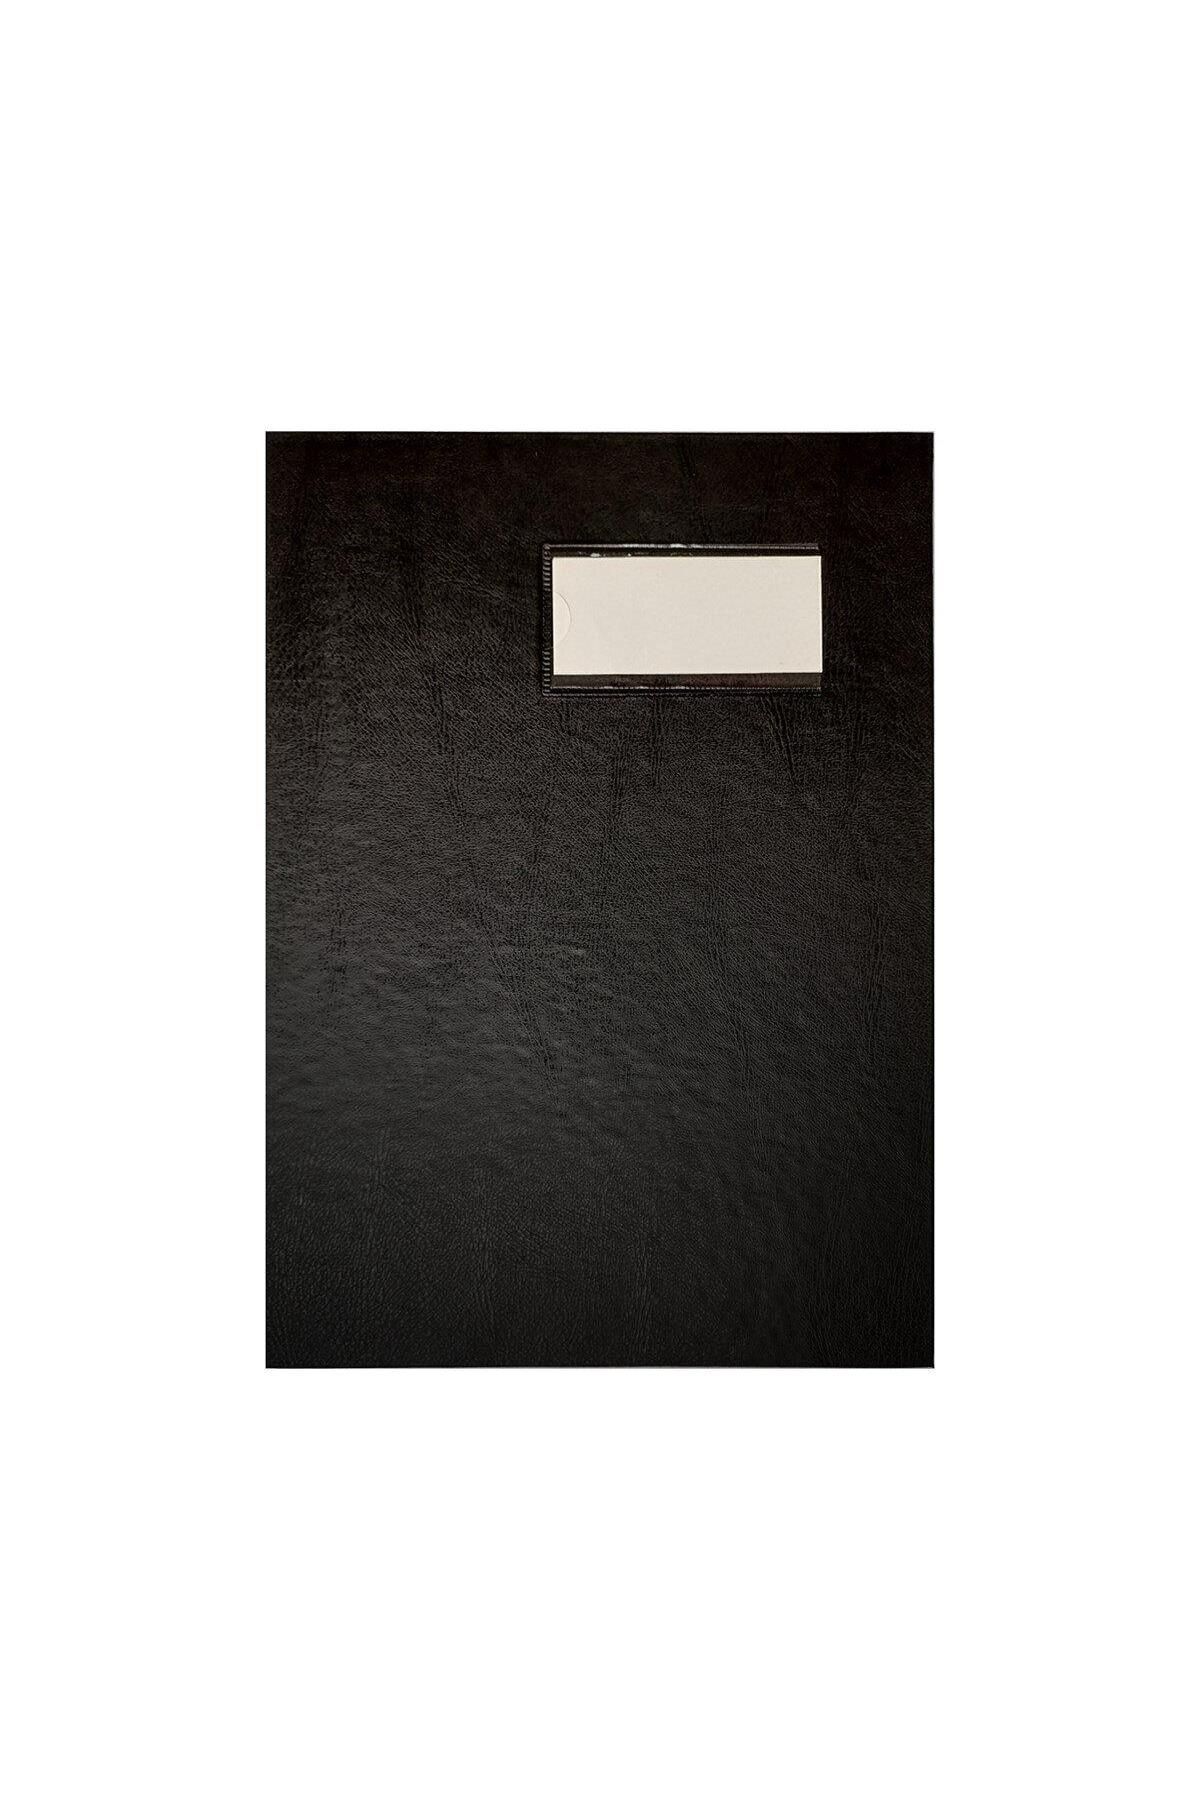 Önder A4 İmza Dosyası Defteri Cilt Bezli 24 Yaprak Siyah 7123-3